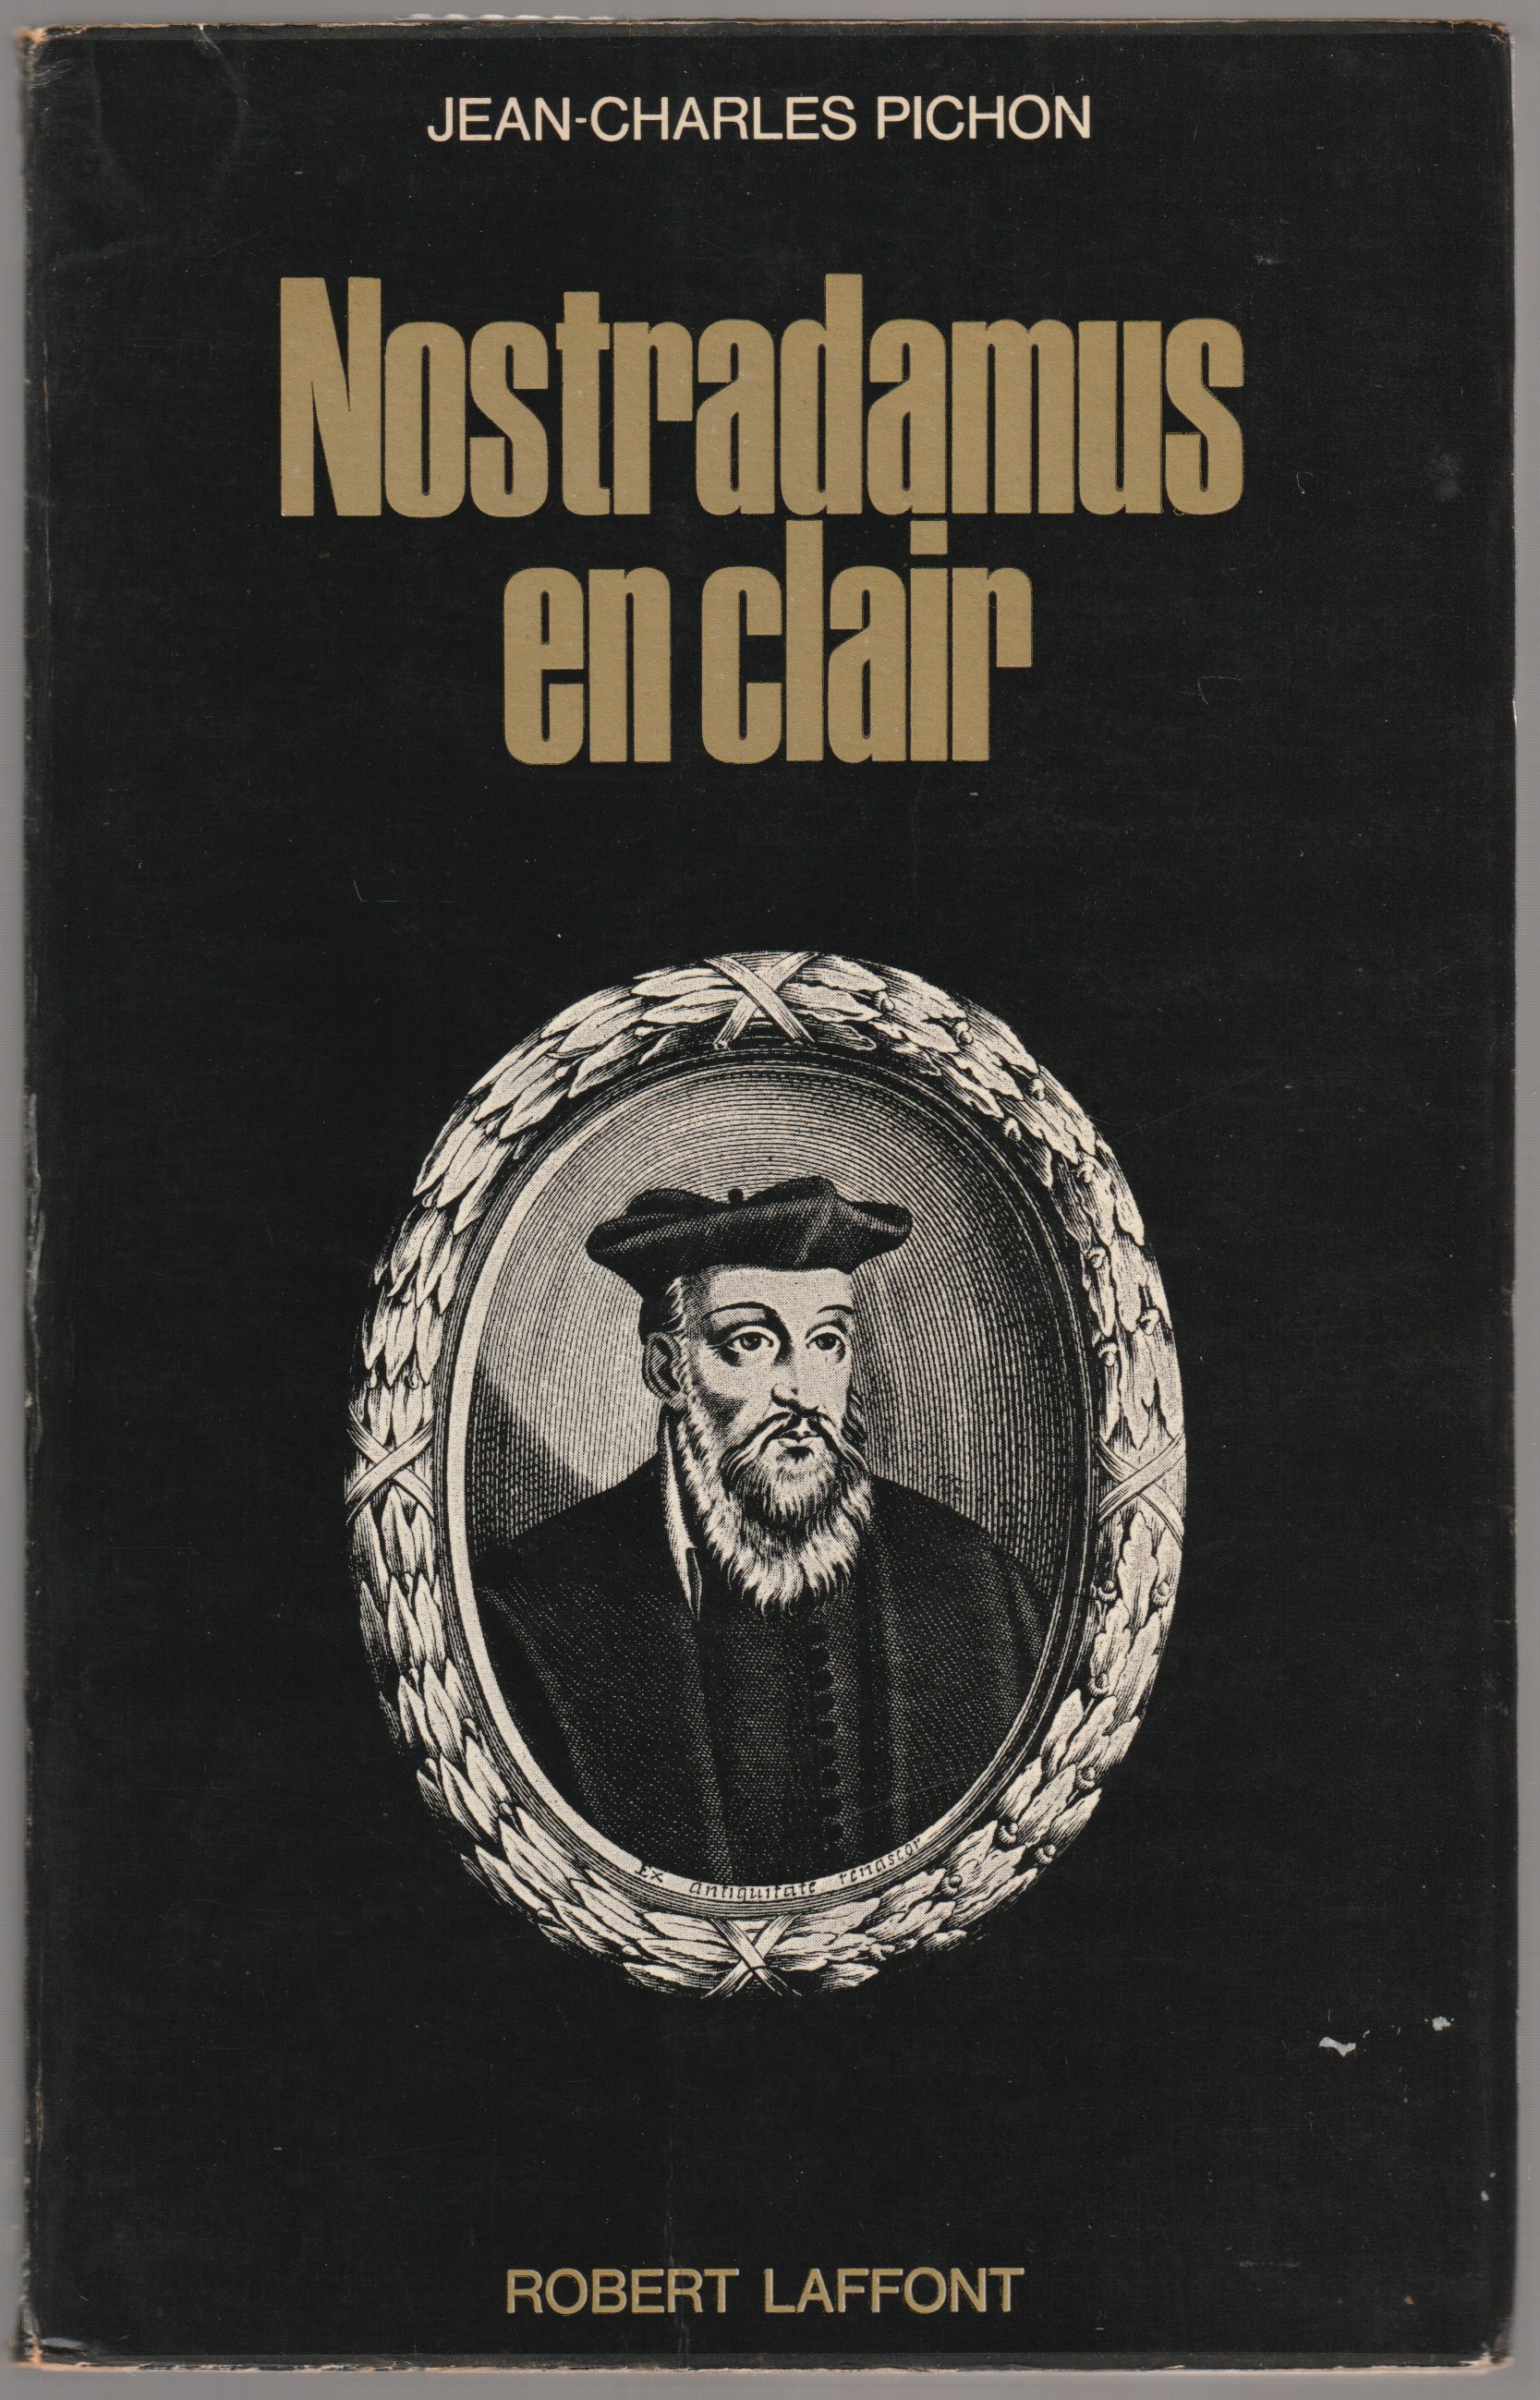 Nostradamus en clair.